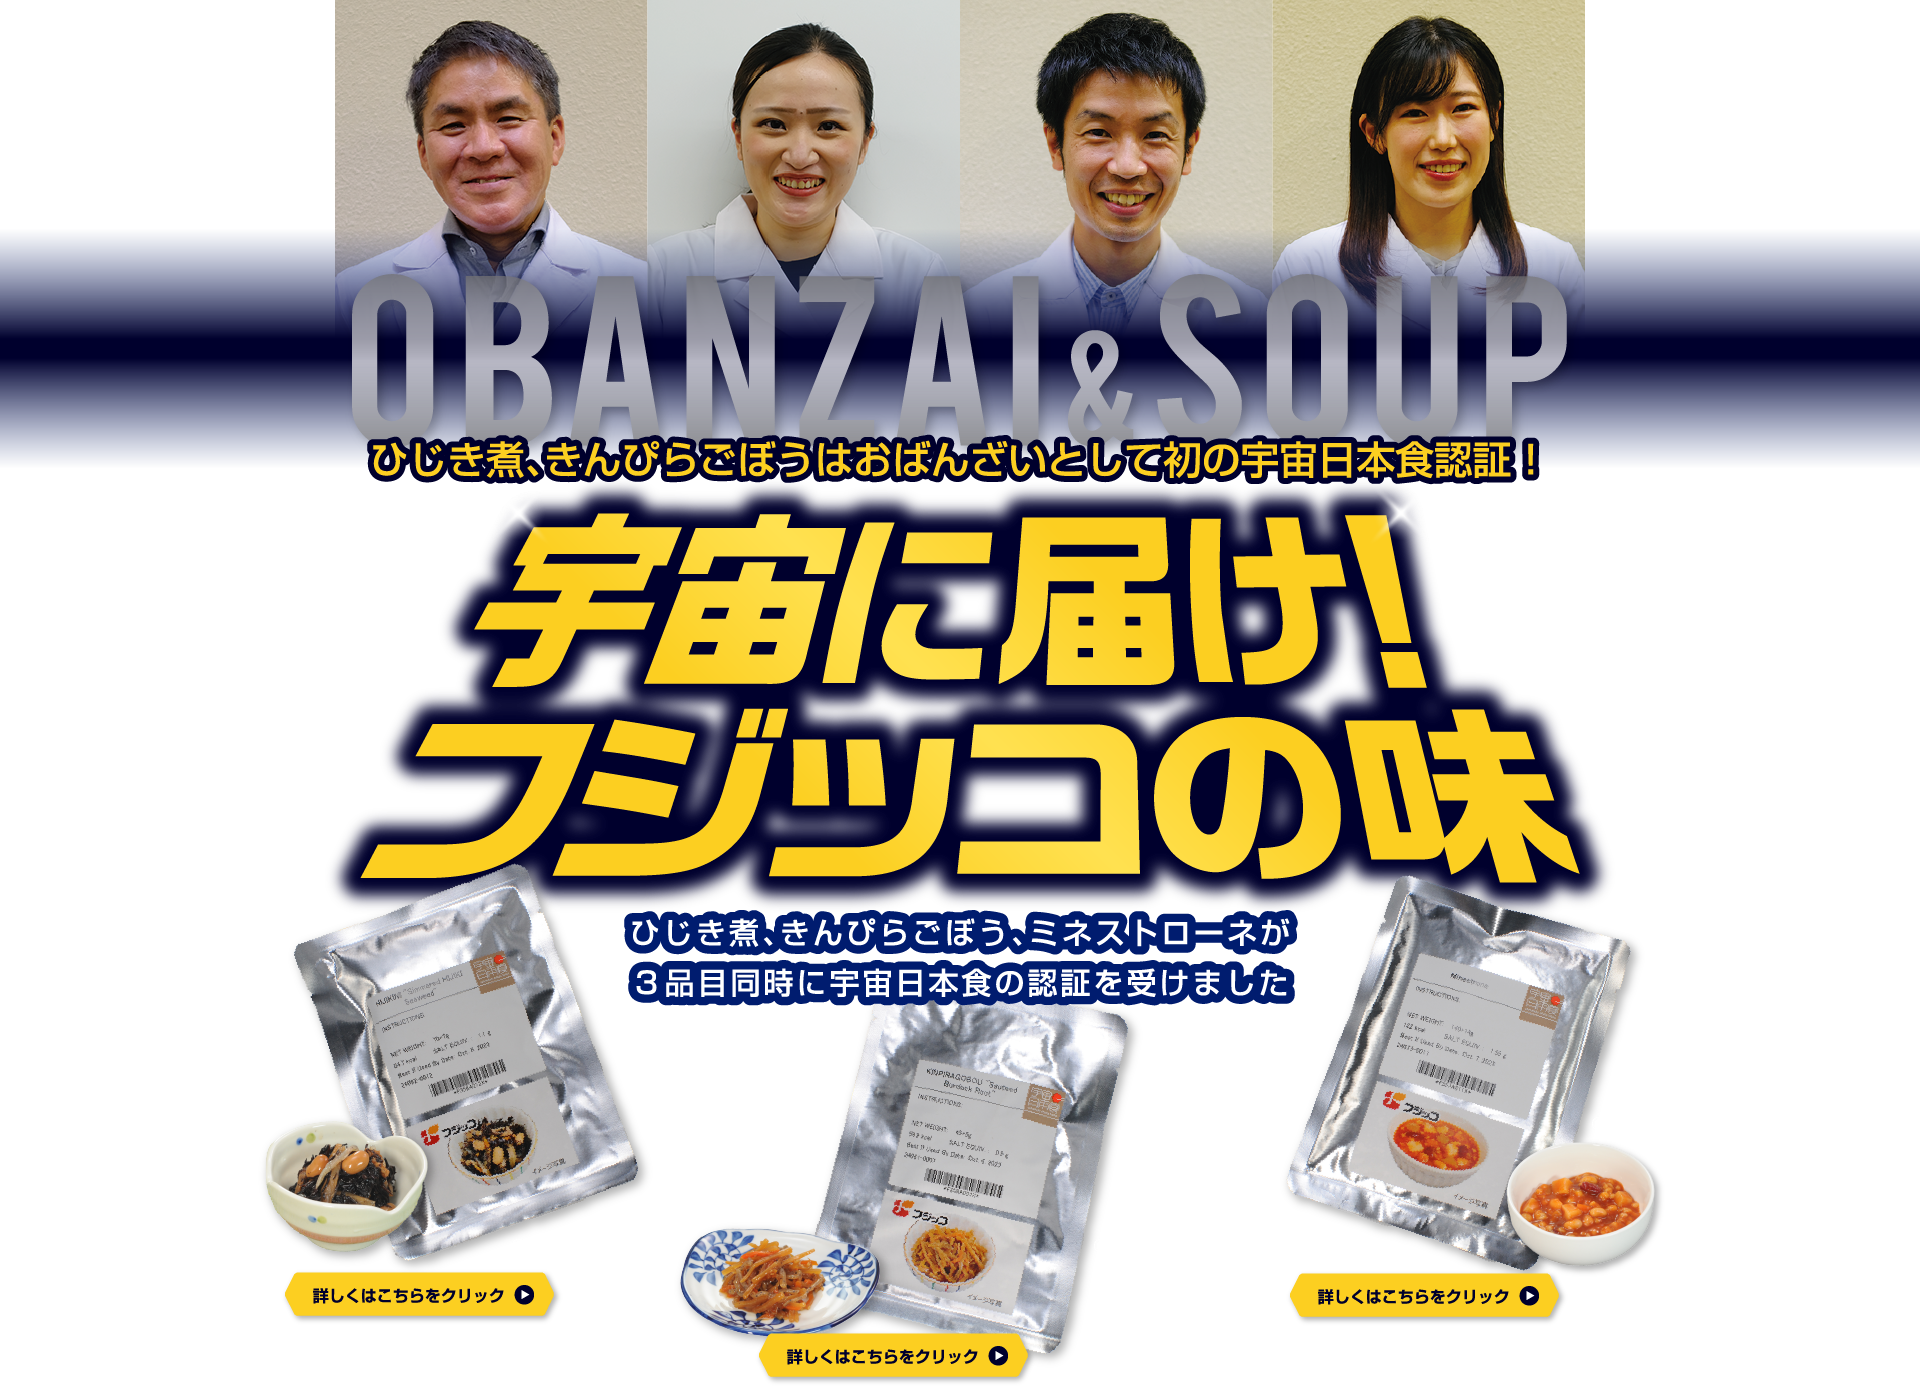 OBANZAI＆SOUP　ひじき煮、きんぴらごぼうはおばんざいとして初の宇宙日本食認証！　宇宙に届け！フジッコの味　ひじき煮、きんぴらごぼう、ミネストローネが3品目同時に宇宙日本食の認証を受けました